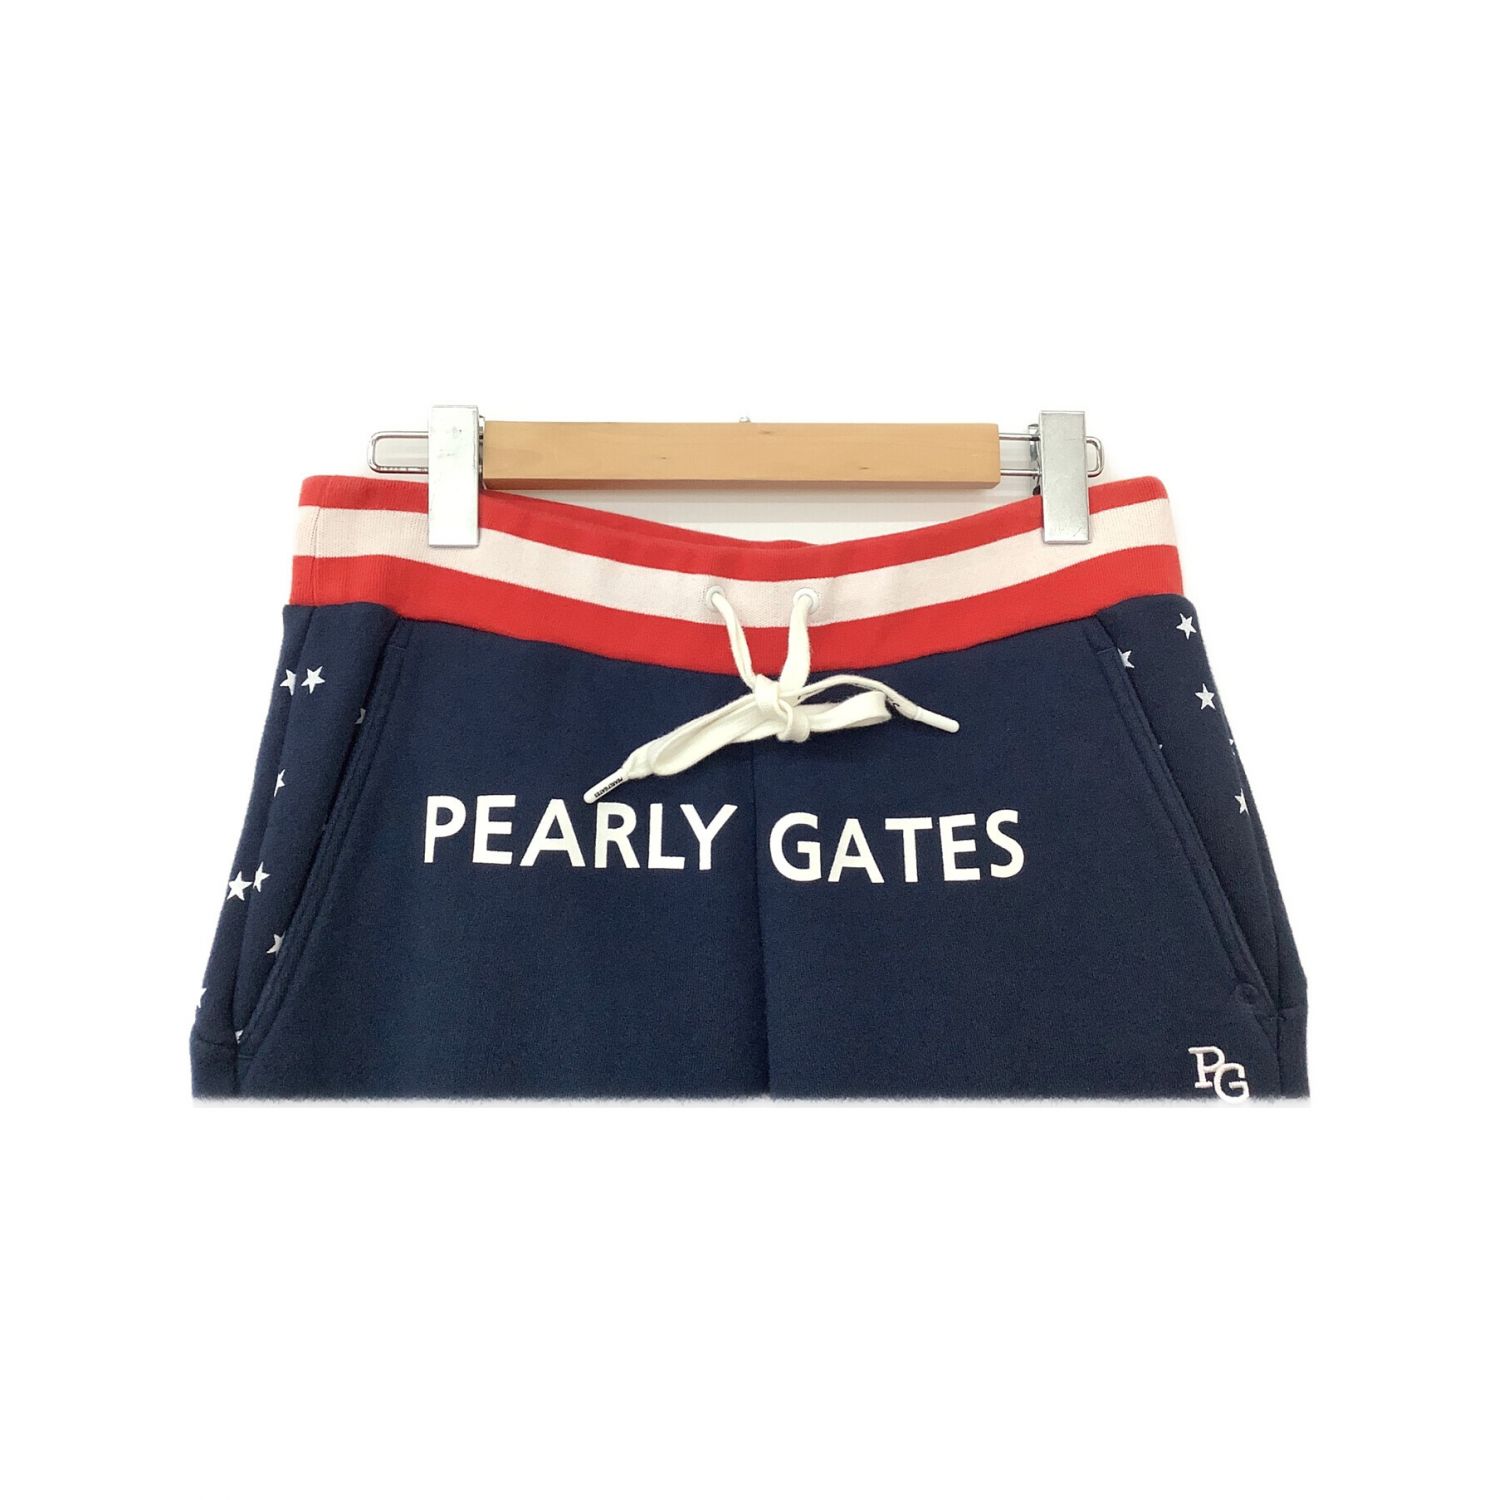 PEARLY GATES (パーリーゲイツ) ゴルフウェア(パンツ) メンズ SIZE M